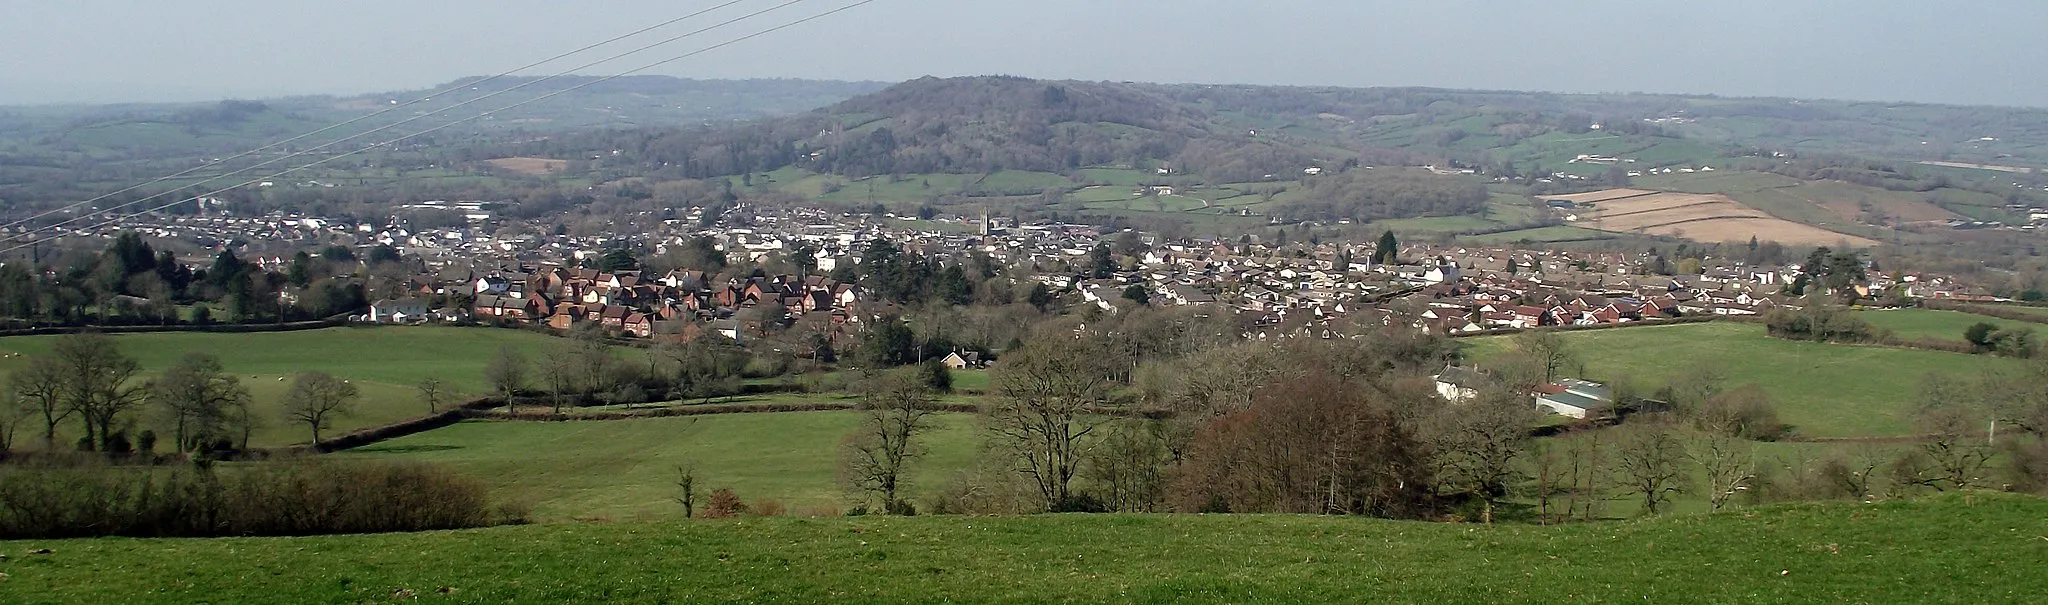 Image of Devon